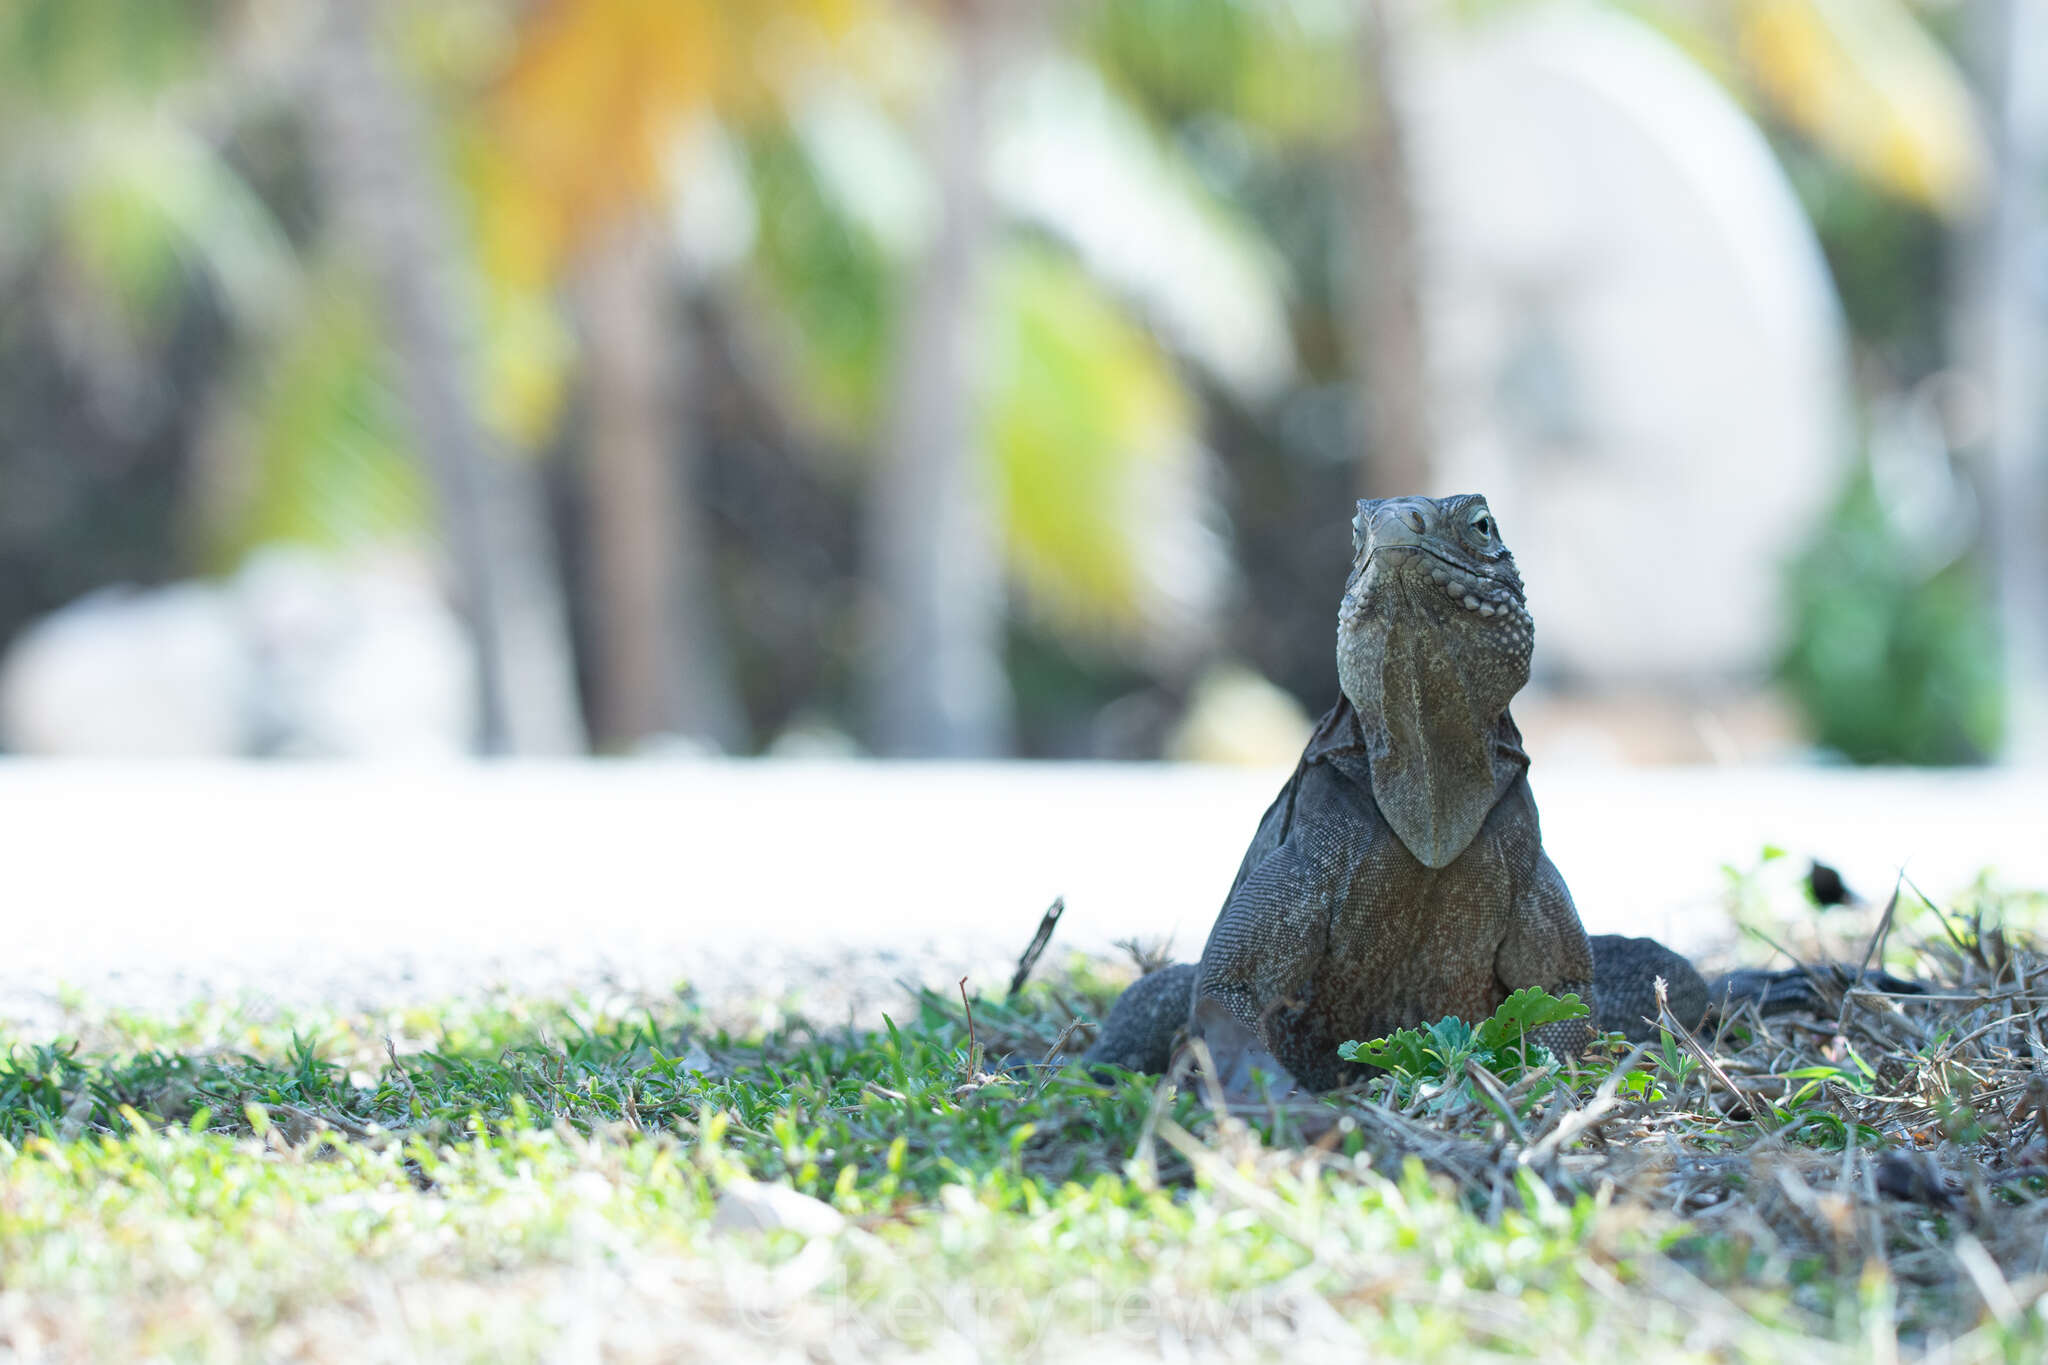 Image of Cayman Island Ground Iguana